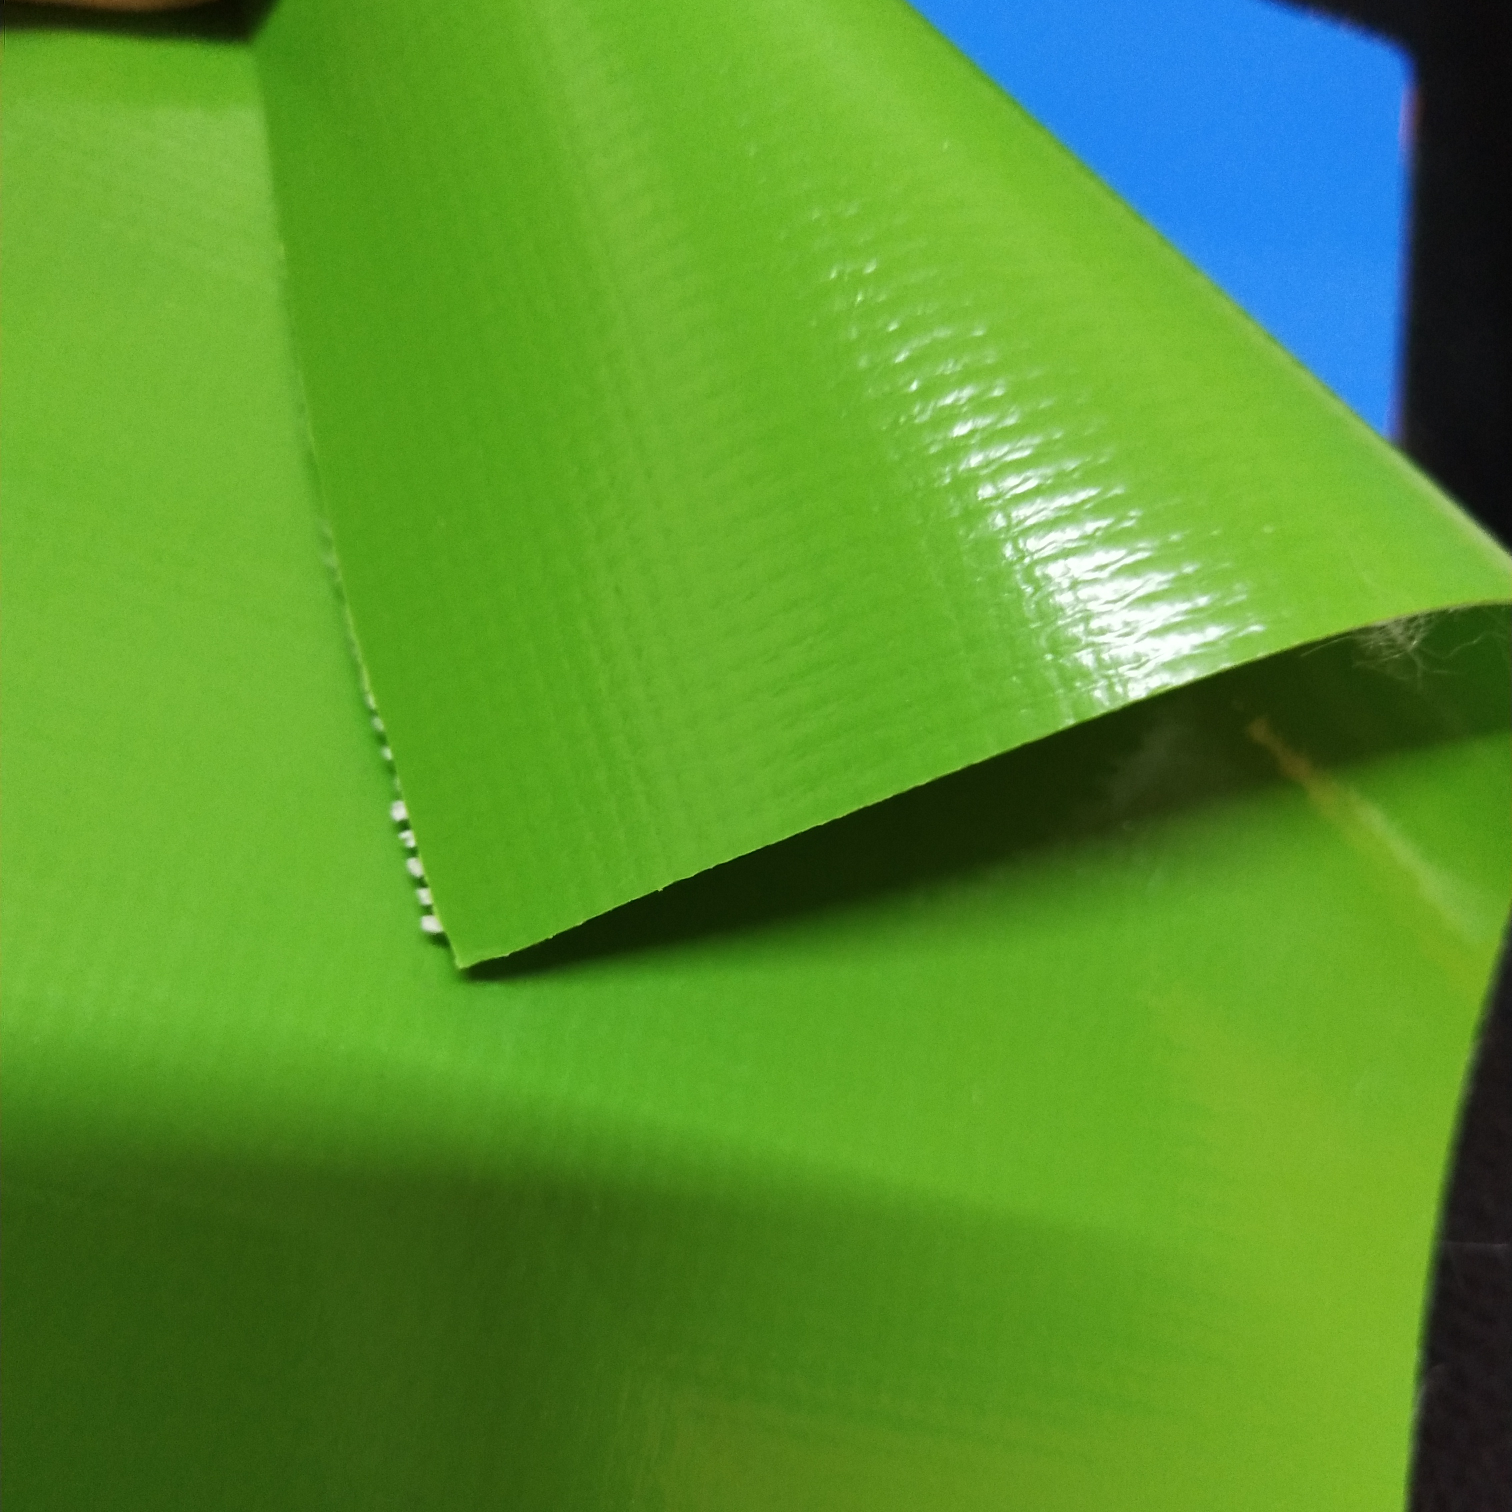 优质光面0.47mm厚浅绿色PVC夹网布  箱包布  机器罩家具罩  体育游乐产品  格种箱包袋专用面料详情图1